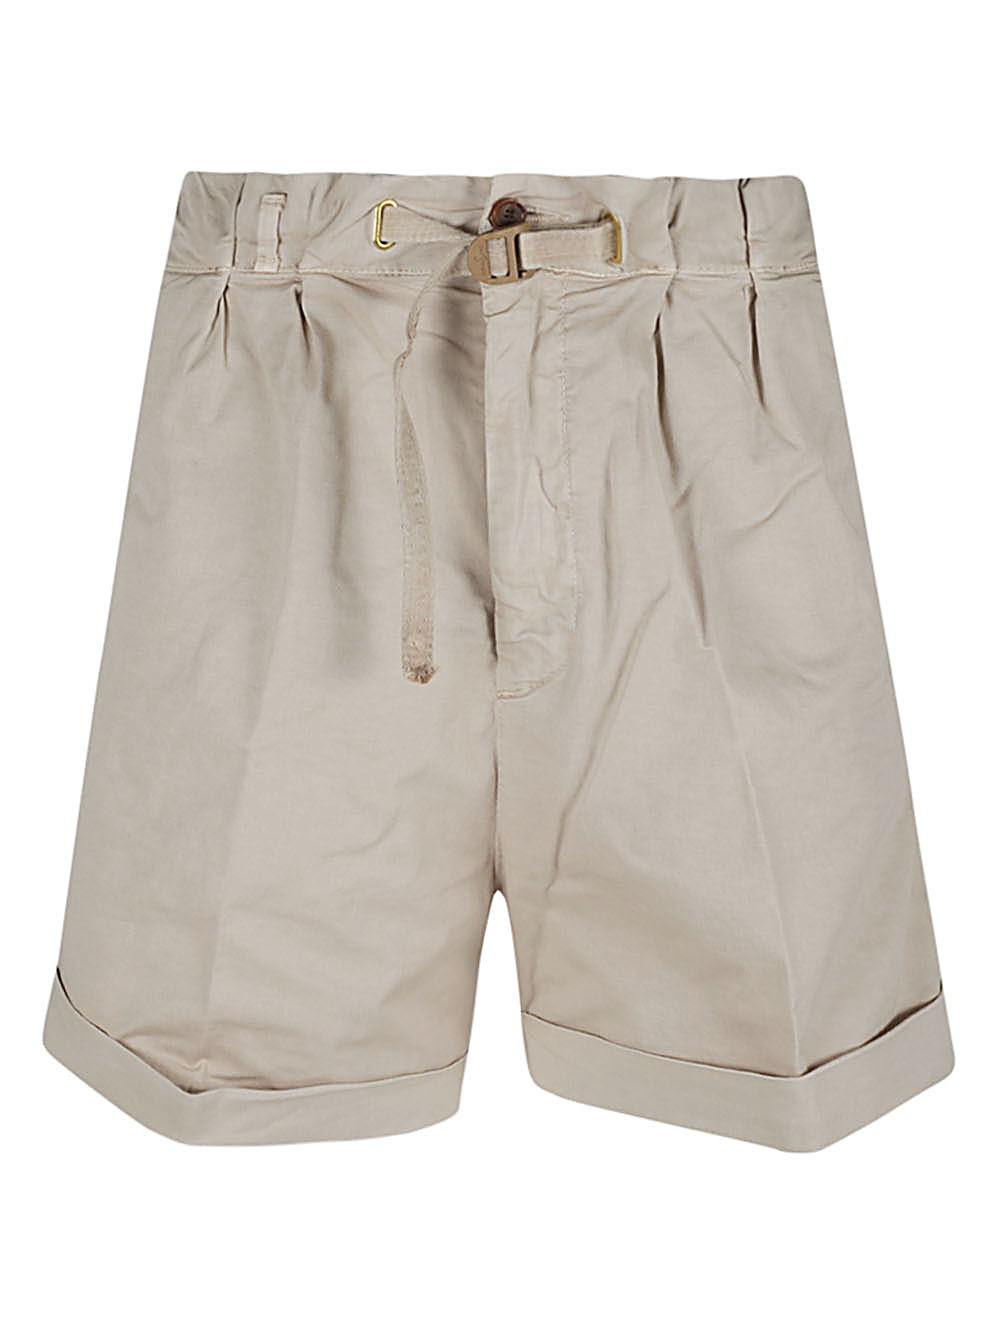 White Sand WHITE SAND- Cotton Shorts